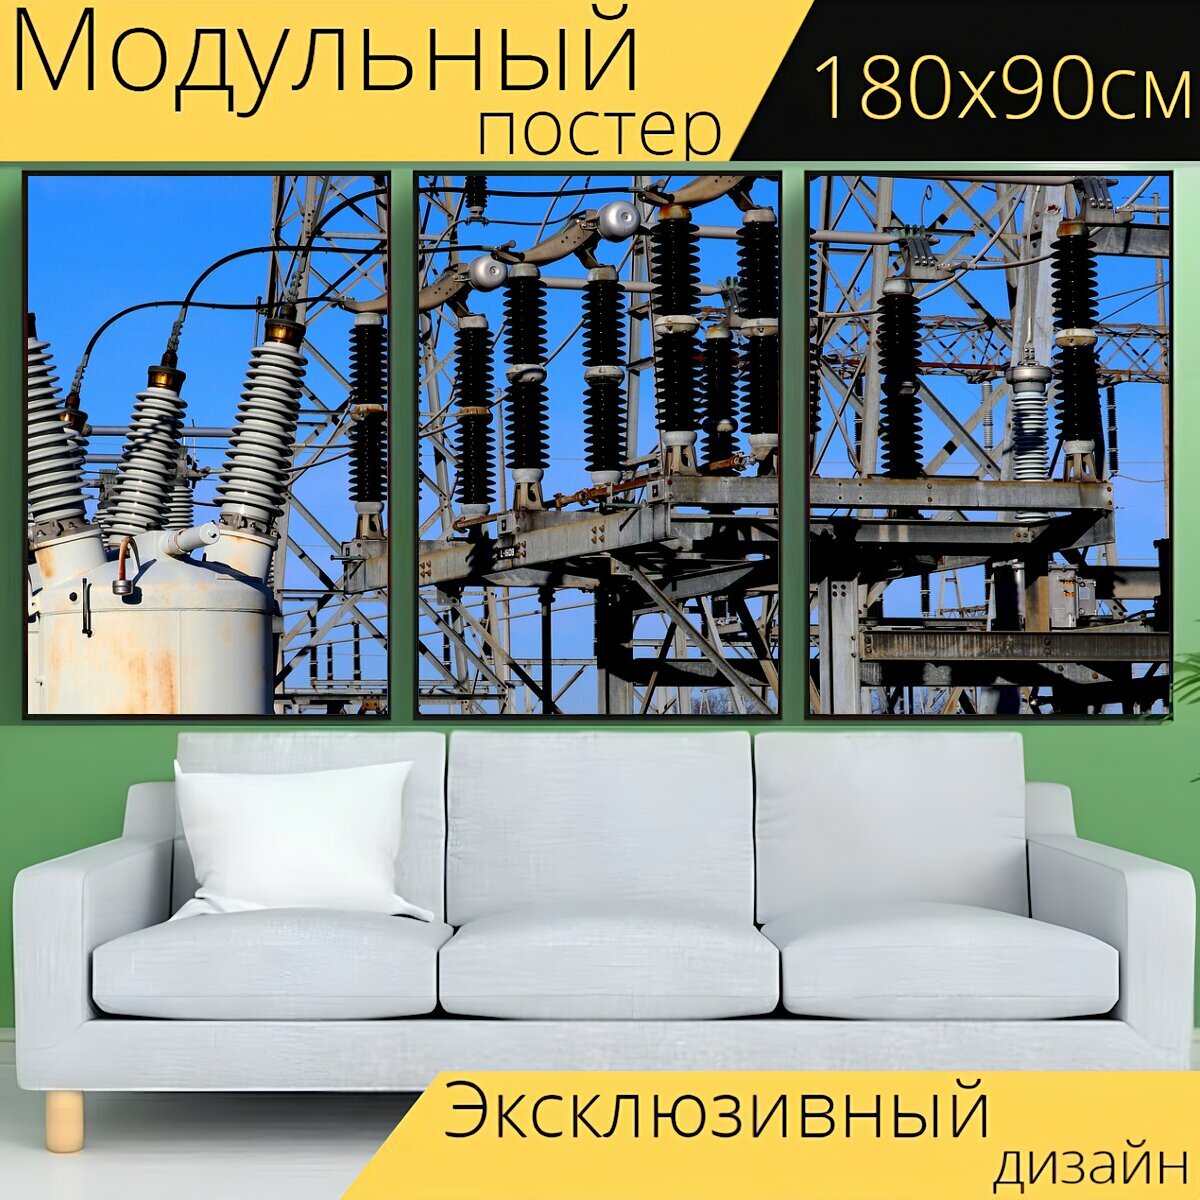 Модульный постер "Высокое напряжение, электричество, подстанция" 180 x 90 см. для интерьера